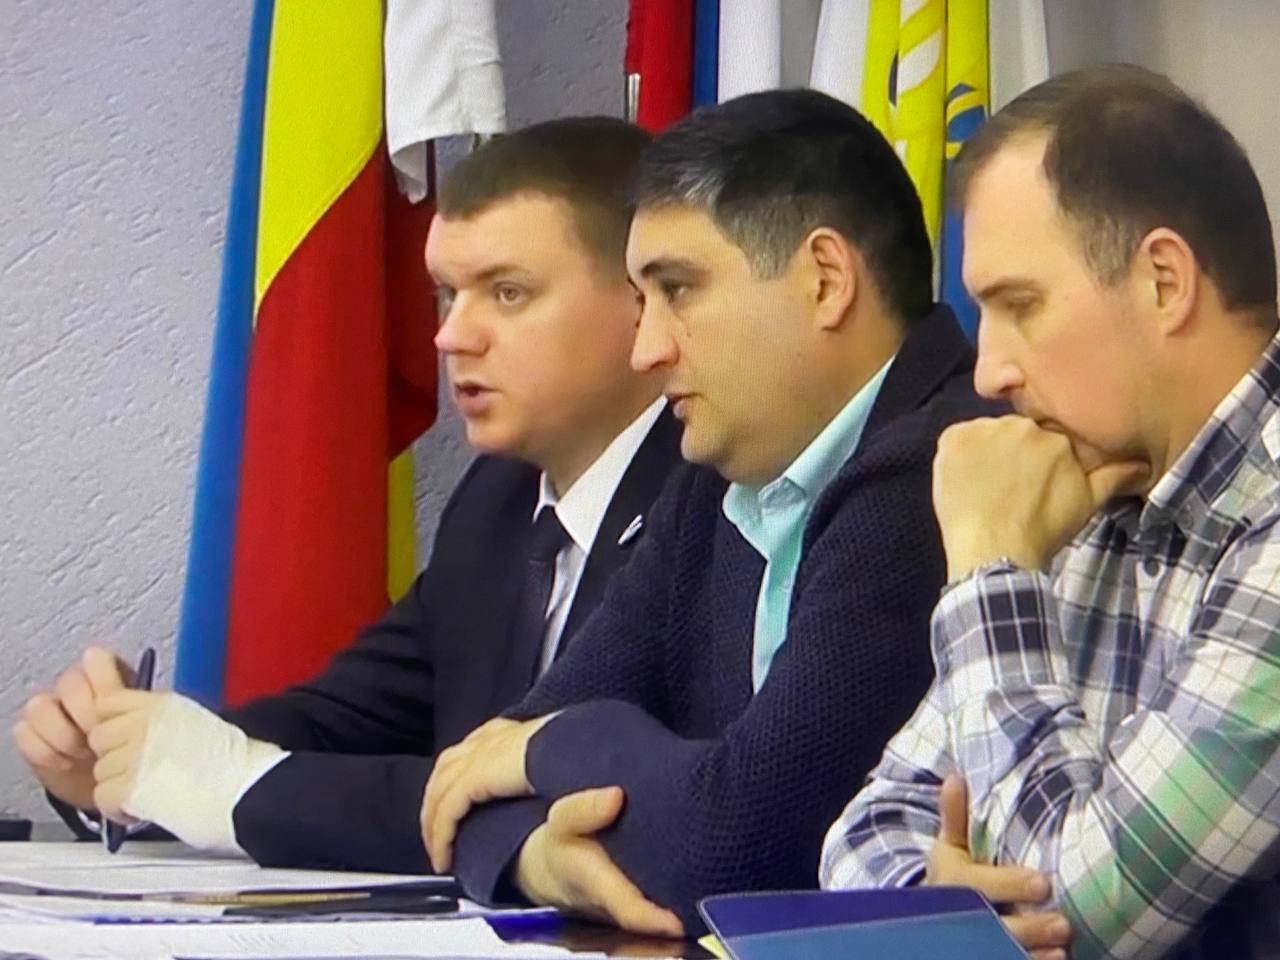 кадр с видеозаписи заседания городской думы по ЖКХ и транспорту в Таганроге